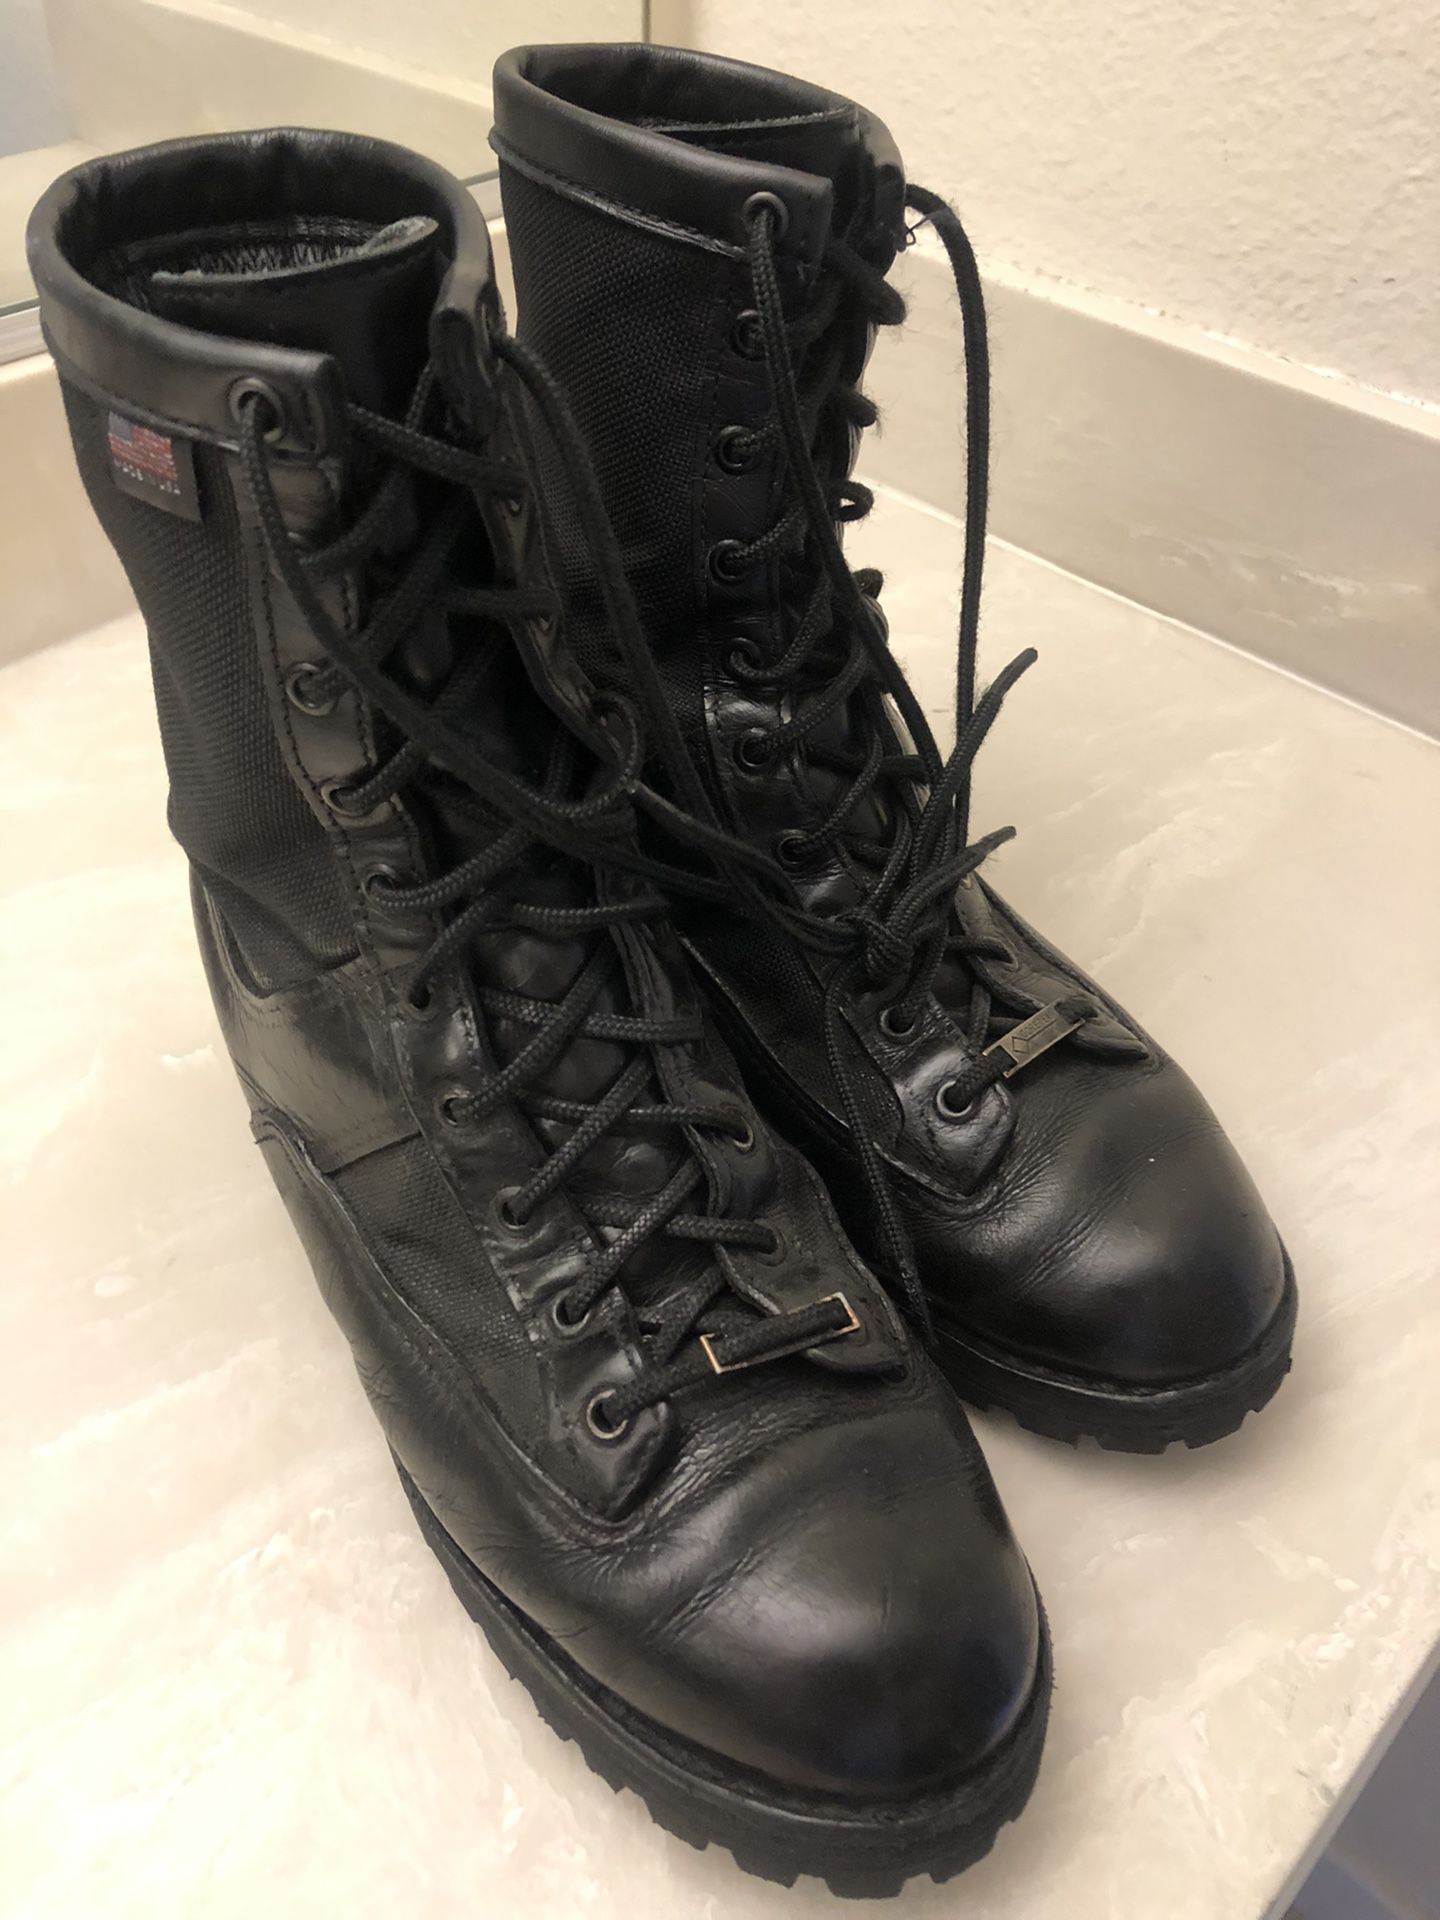 Danner work boots 9.5